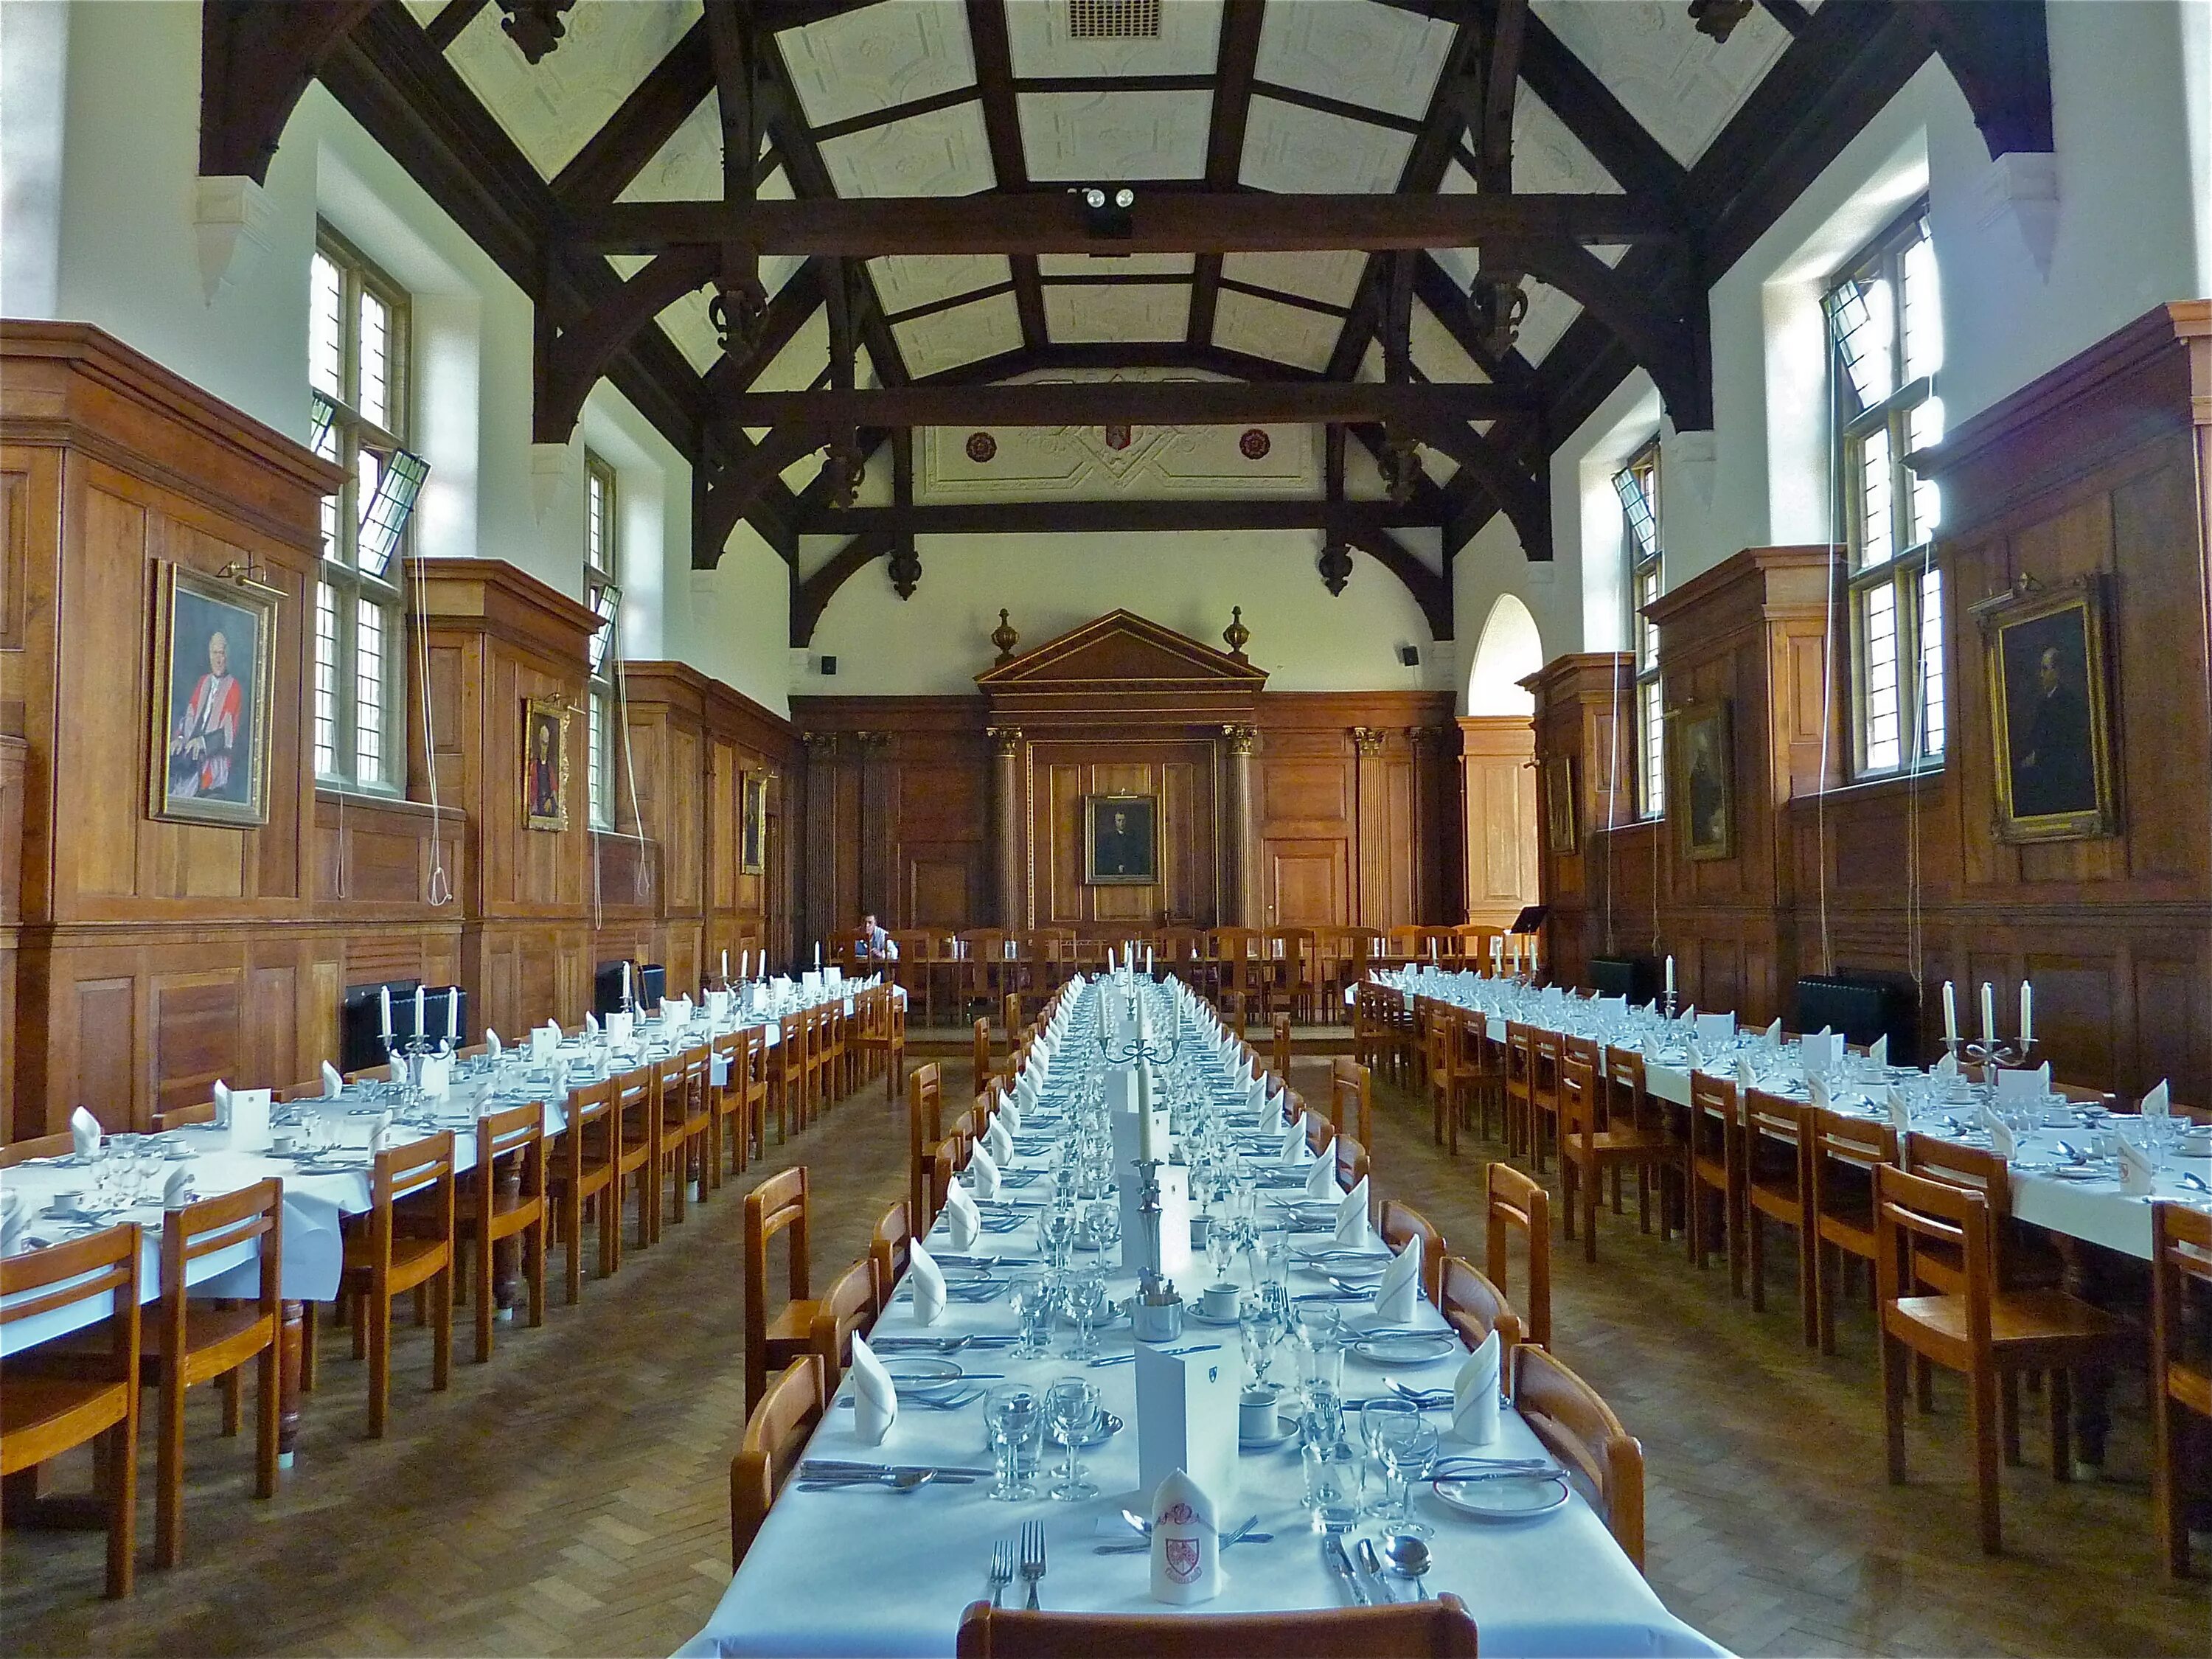 Dining hall. Селвин-колледж (Кембридж). Кембридж университет столовая. Оксфорд университет столовая. Столовая университета Кембридж в Великобритании.